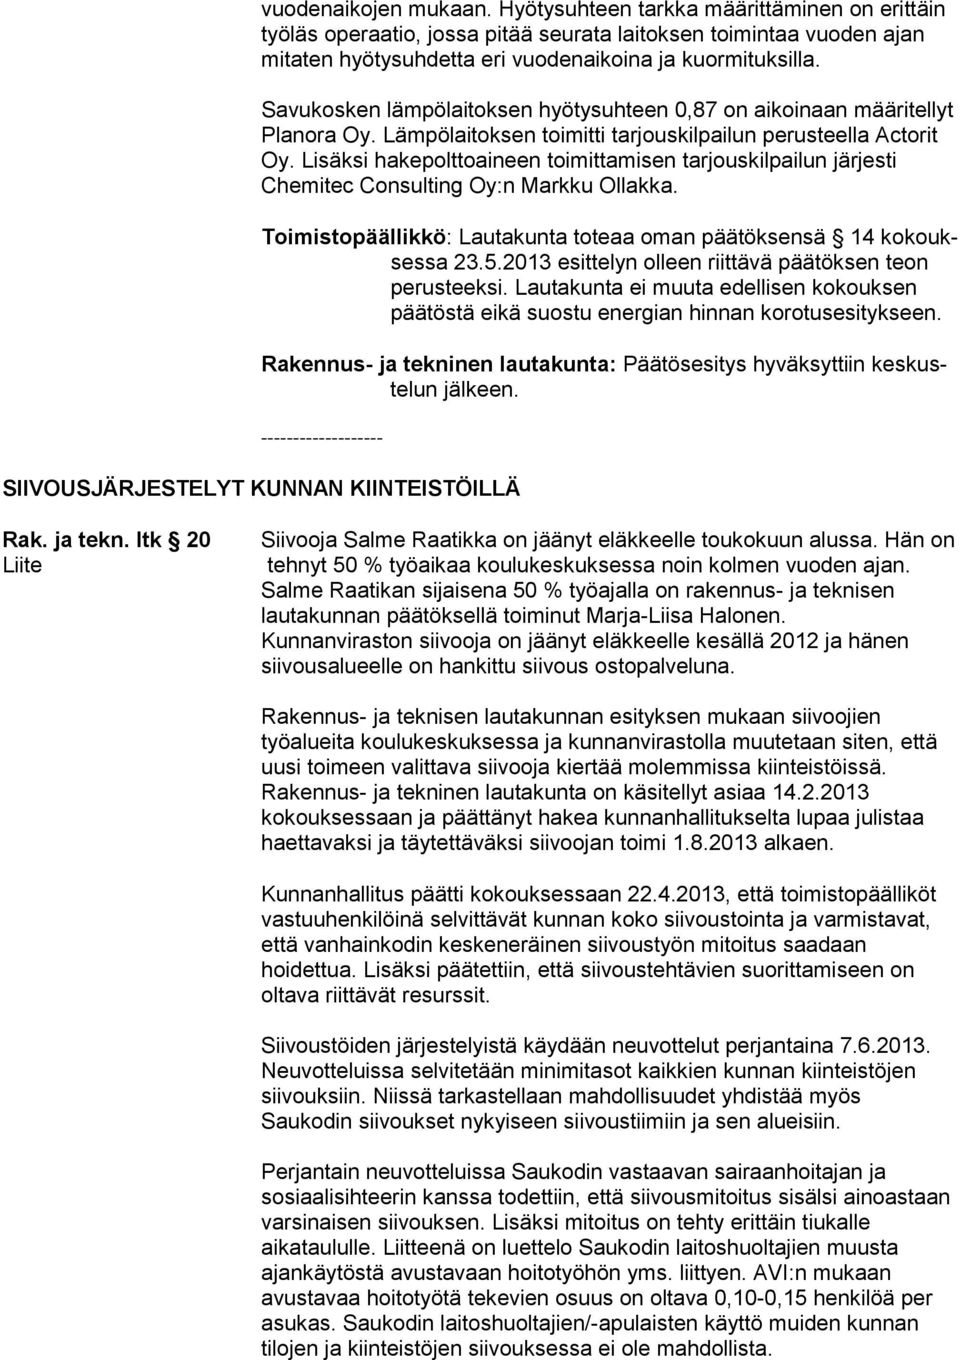 Lisäksi hakepolttoaineen toimittamisen tarjouskilpailun järjesti Chemitec Consulting Oy:n Markku Ollakka. Toimistopäällikkö: Lautakunta toteaa oman päätöksensä 14 kokouksessa 23.5.